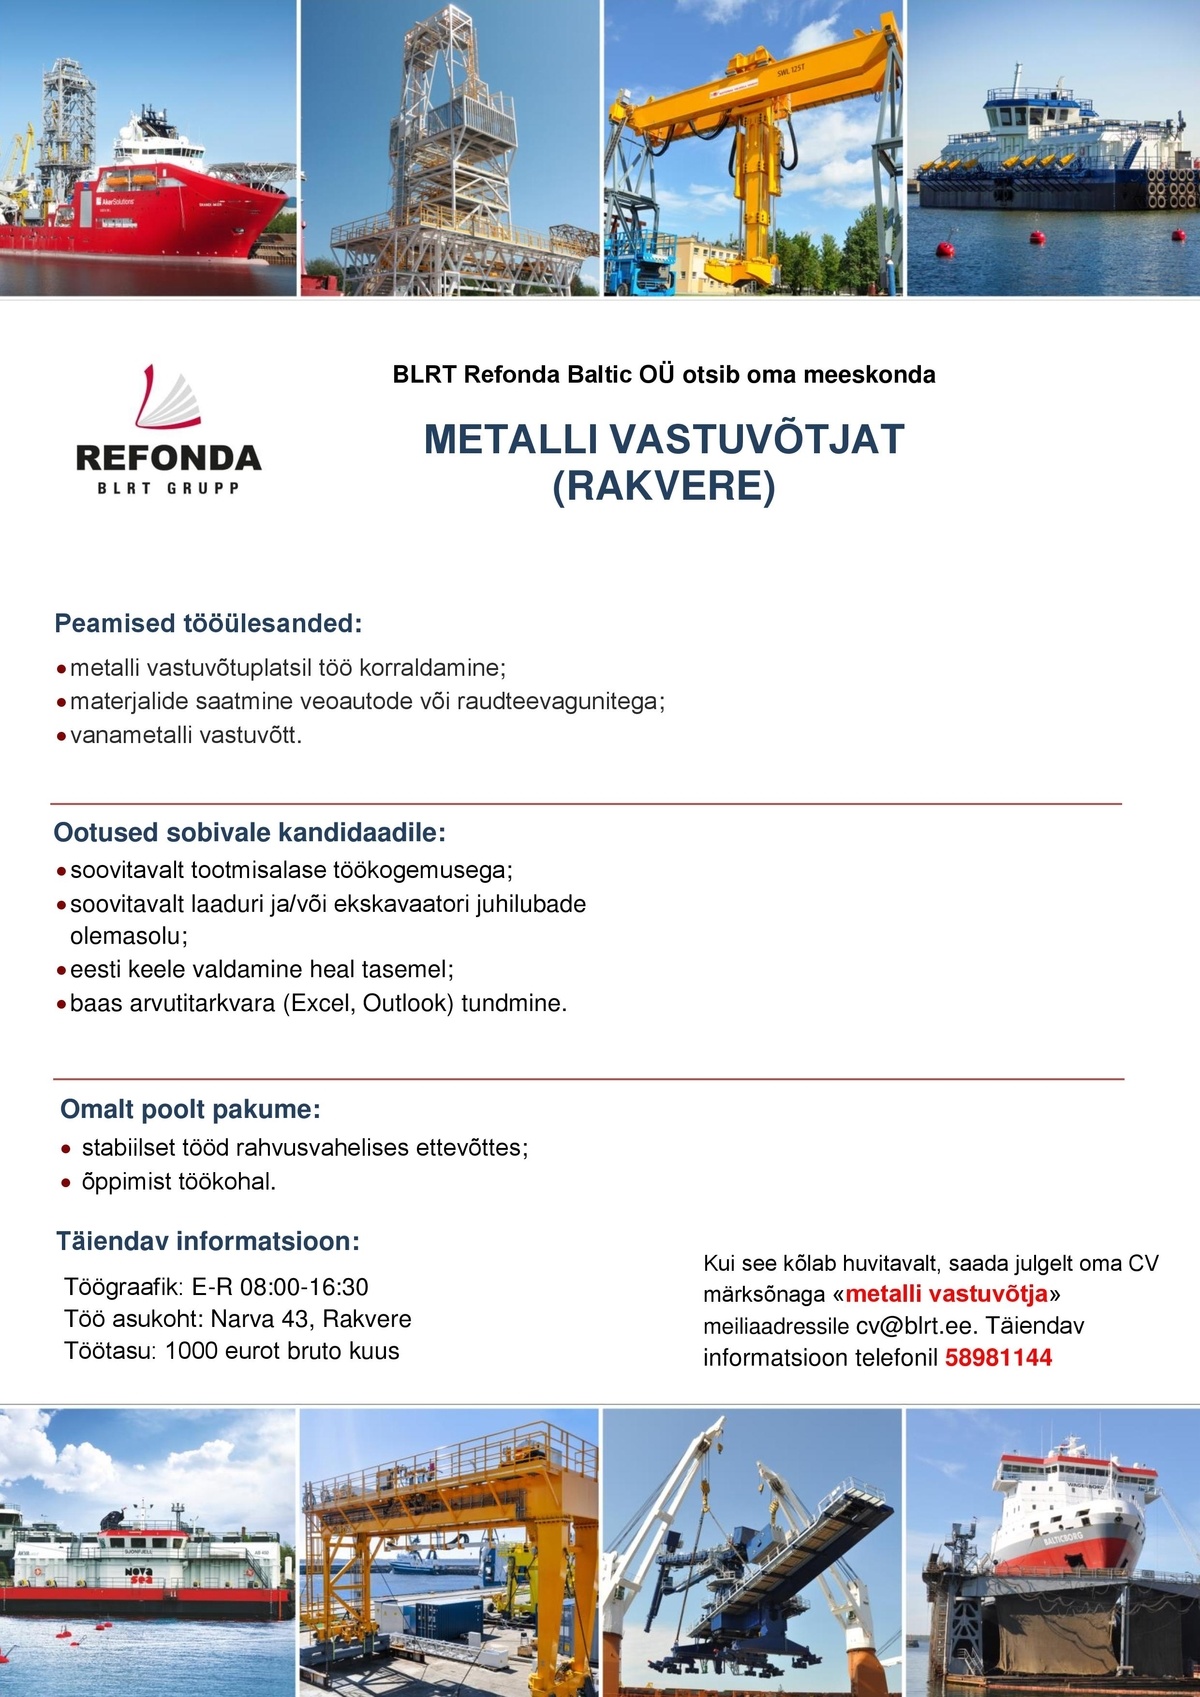 BLRT Refonda Baltic OÜ Metalli vastuvõtja (Rakvere)